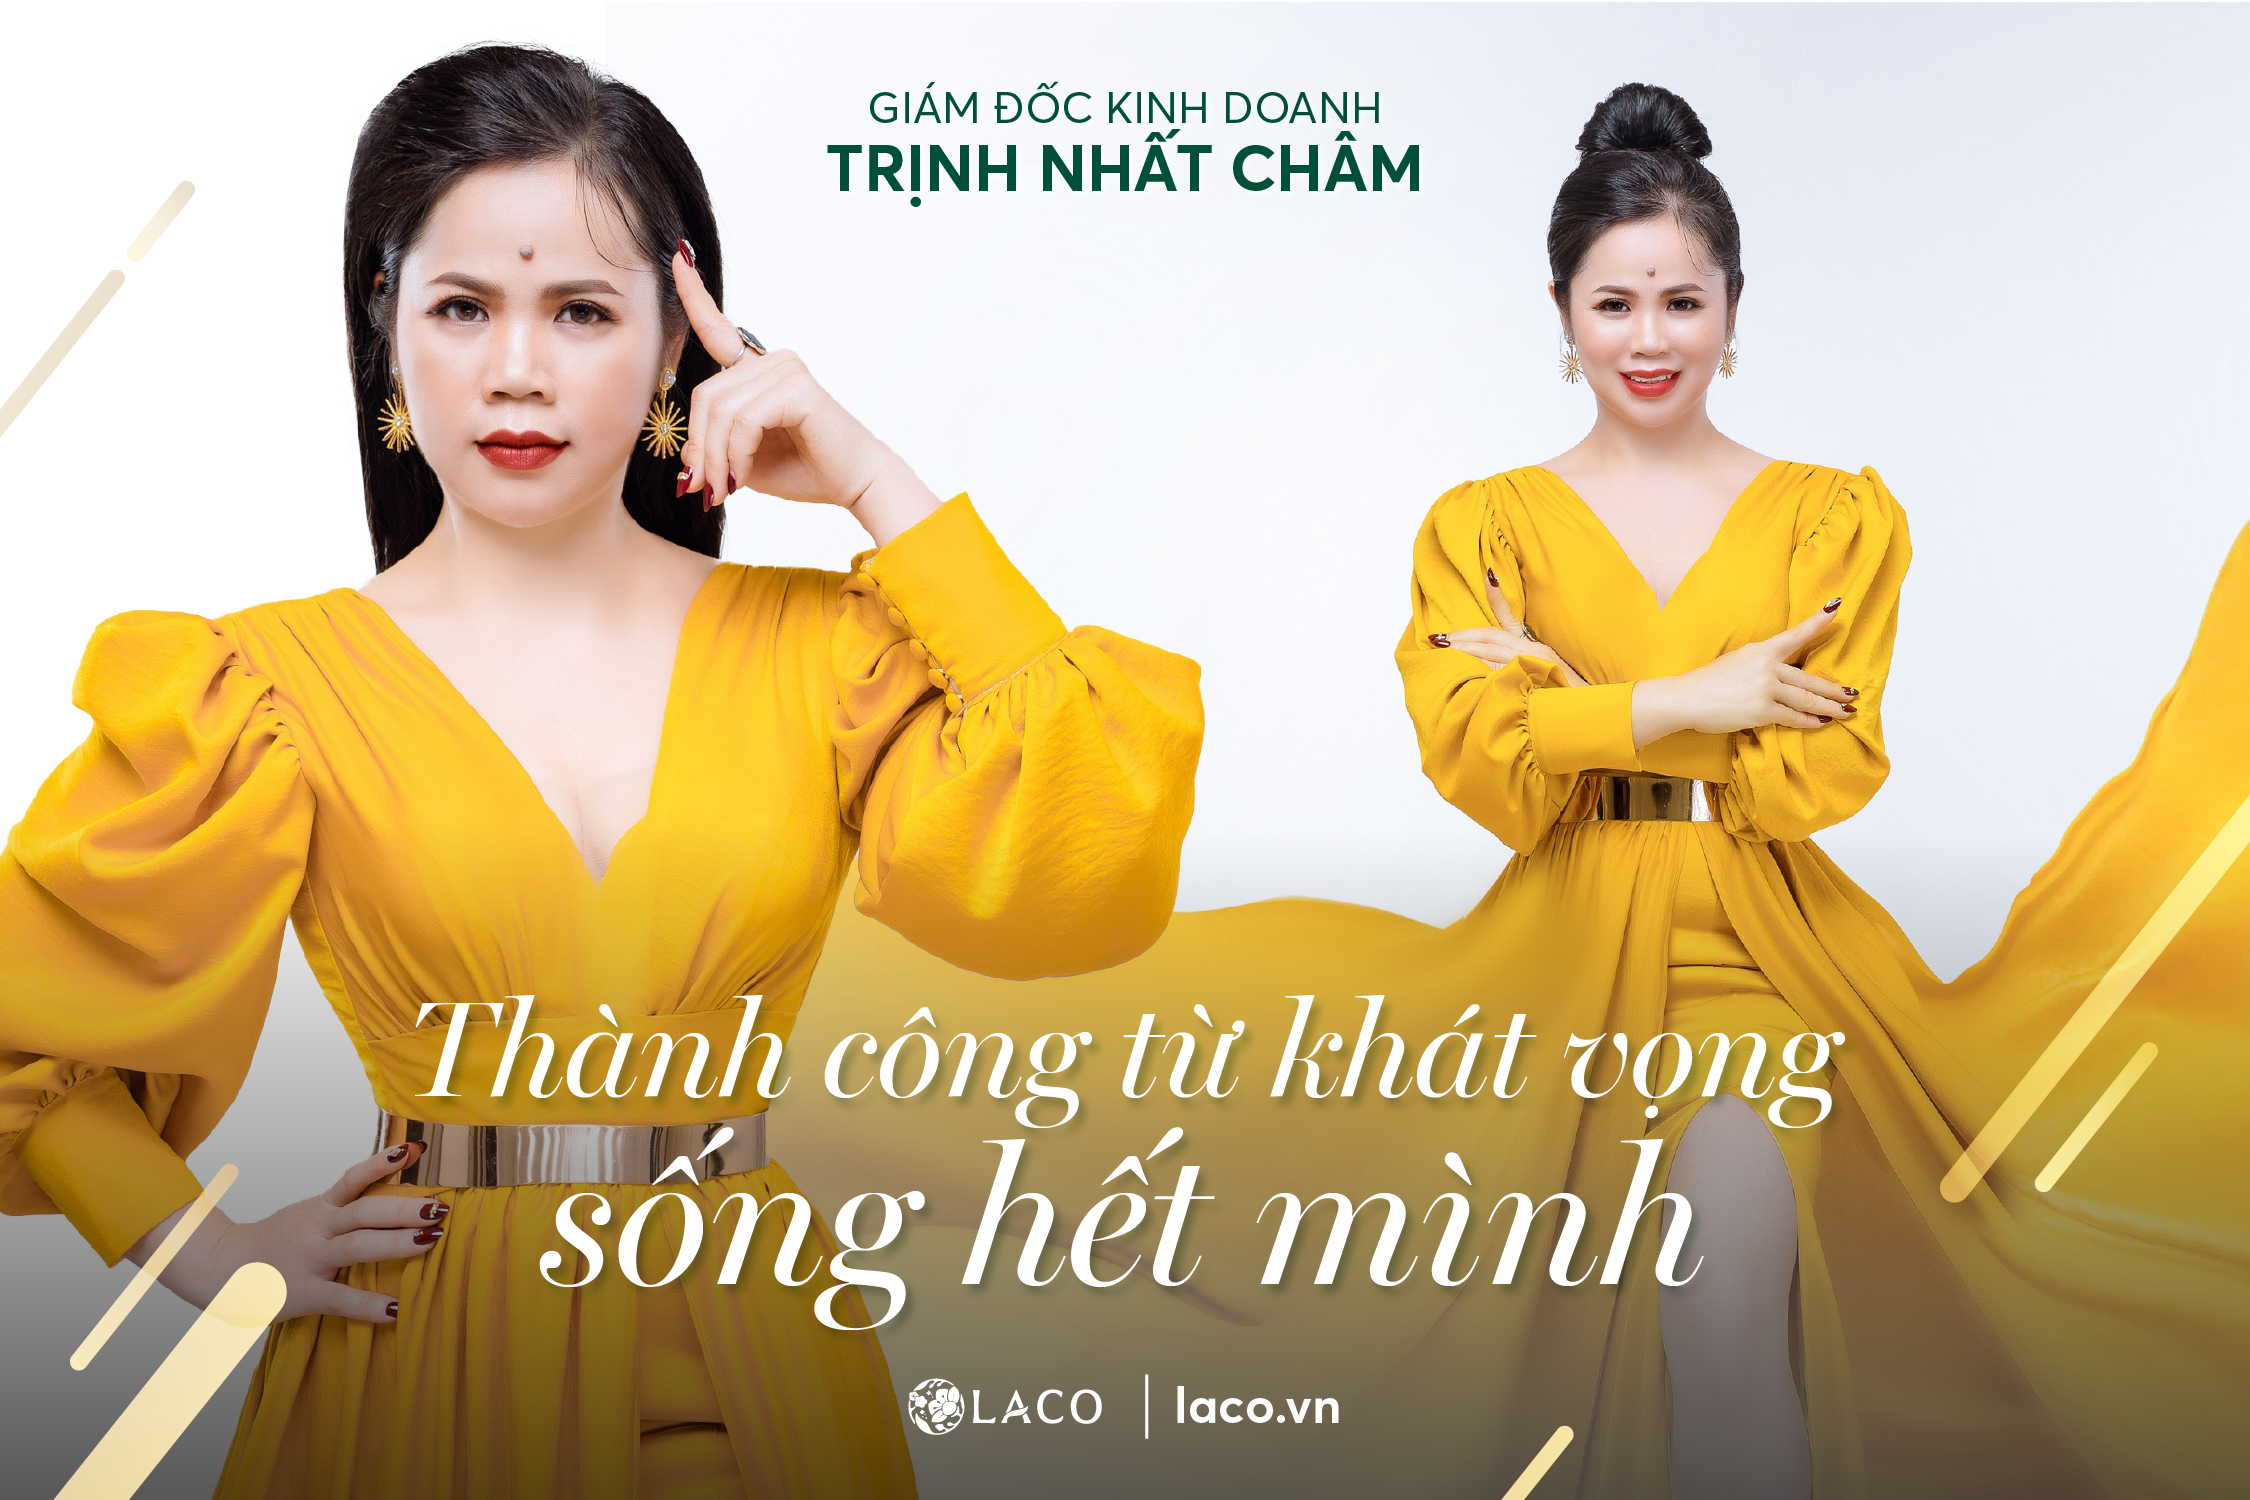 Giám đốc kinh doanh Trịnh Nhất Châm: Thành công từ khát vọng sống hết mình